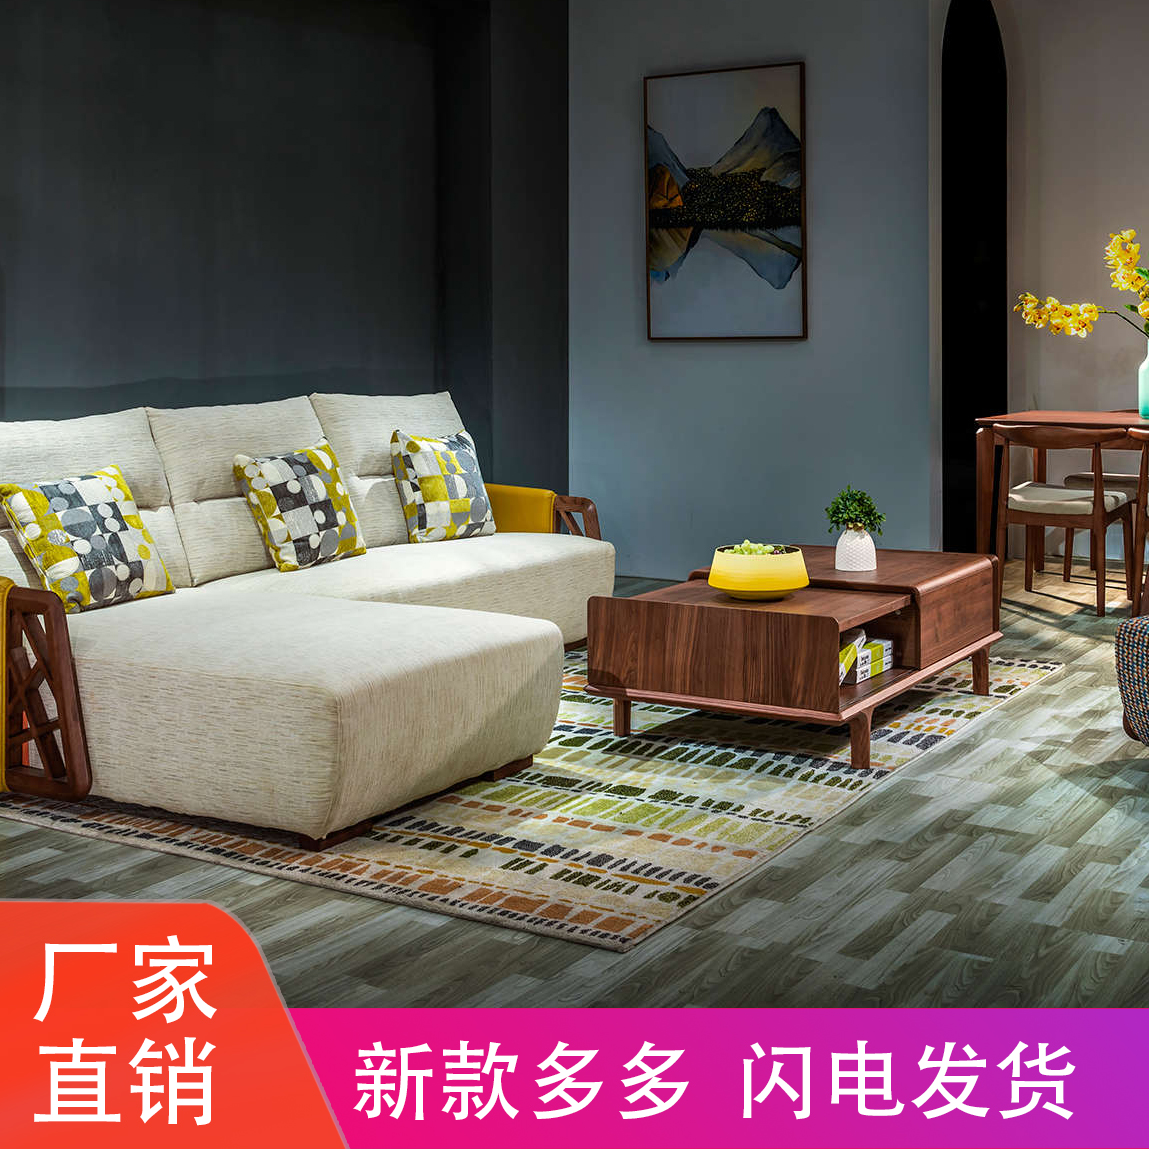 白蜡木沙发转角储物实木布艺沙发组合现代新中式客厅全套家具